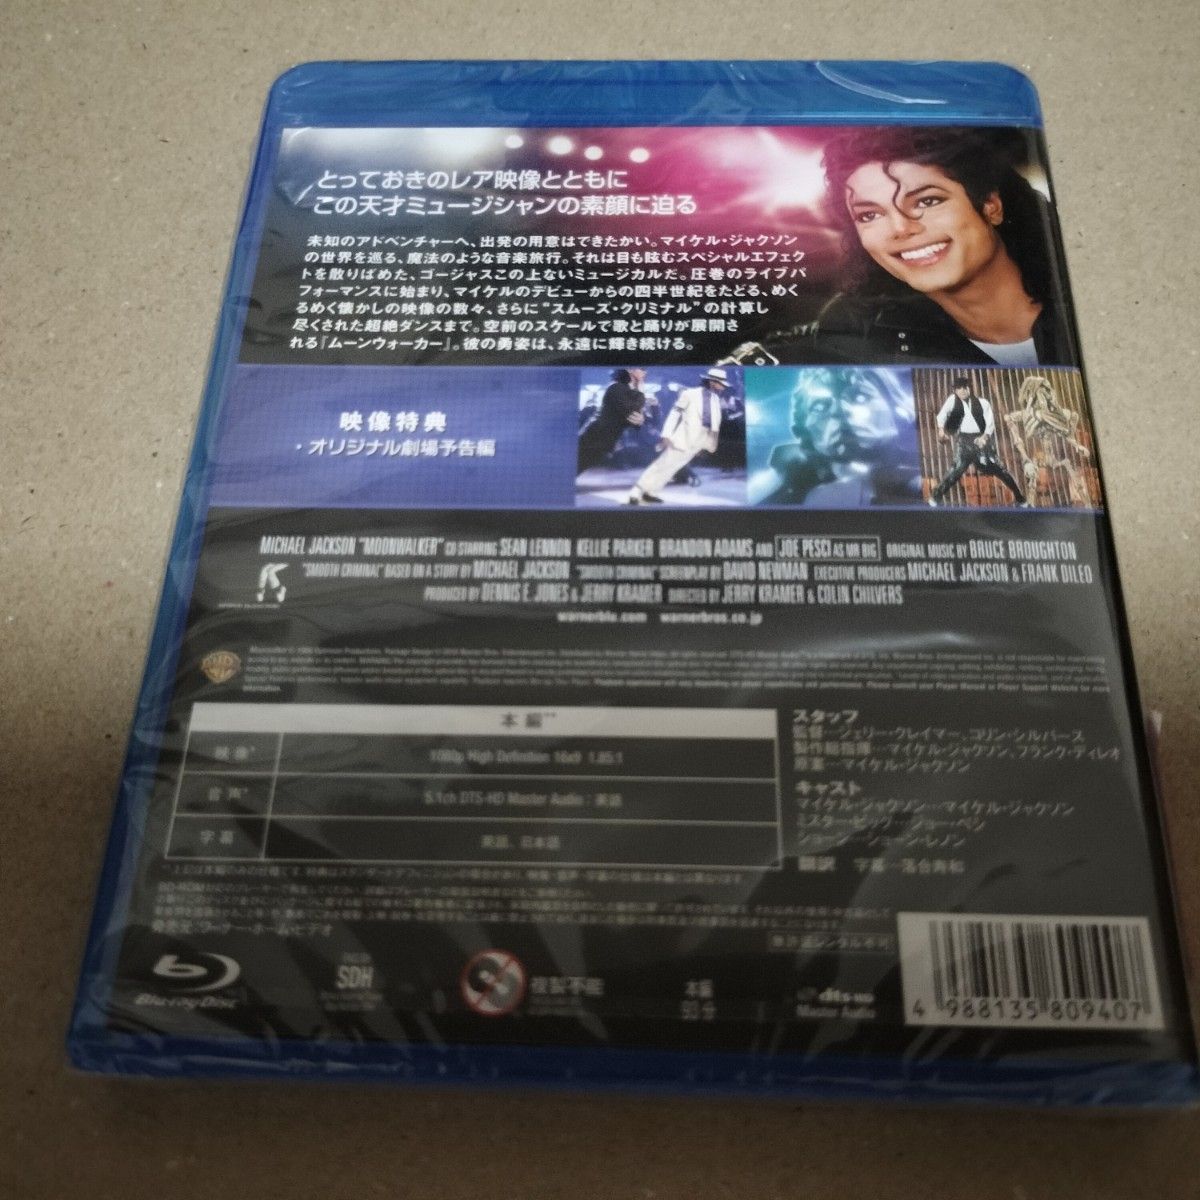 ムーンウォーカー Blu-ray ブルーレイ マイケルジャクソン セル版 新品 未使用